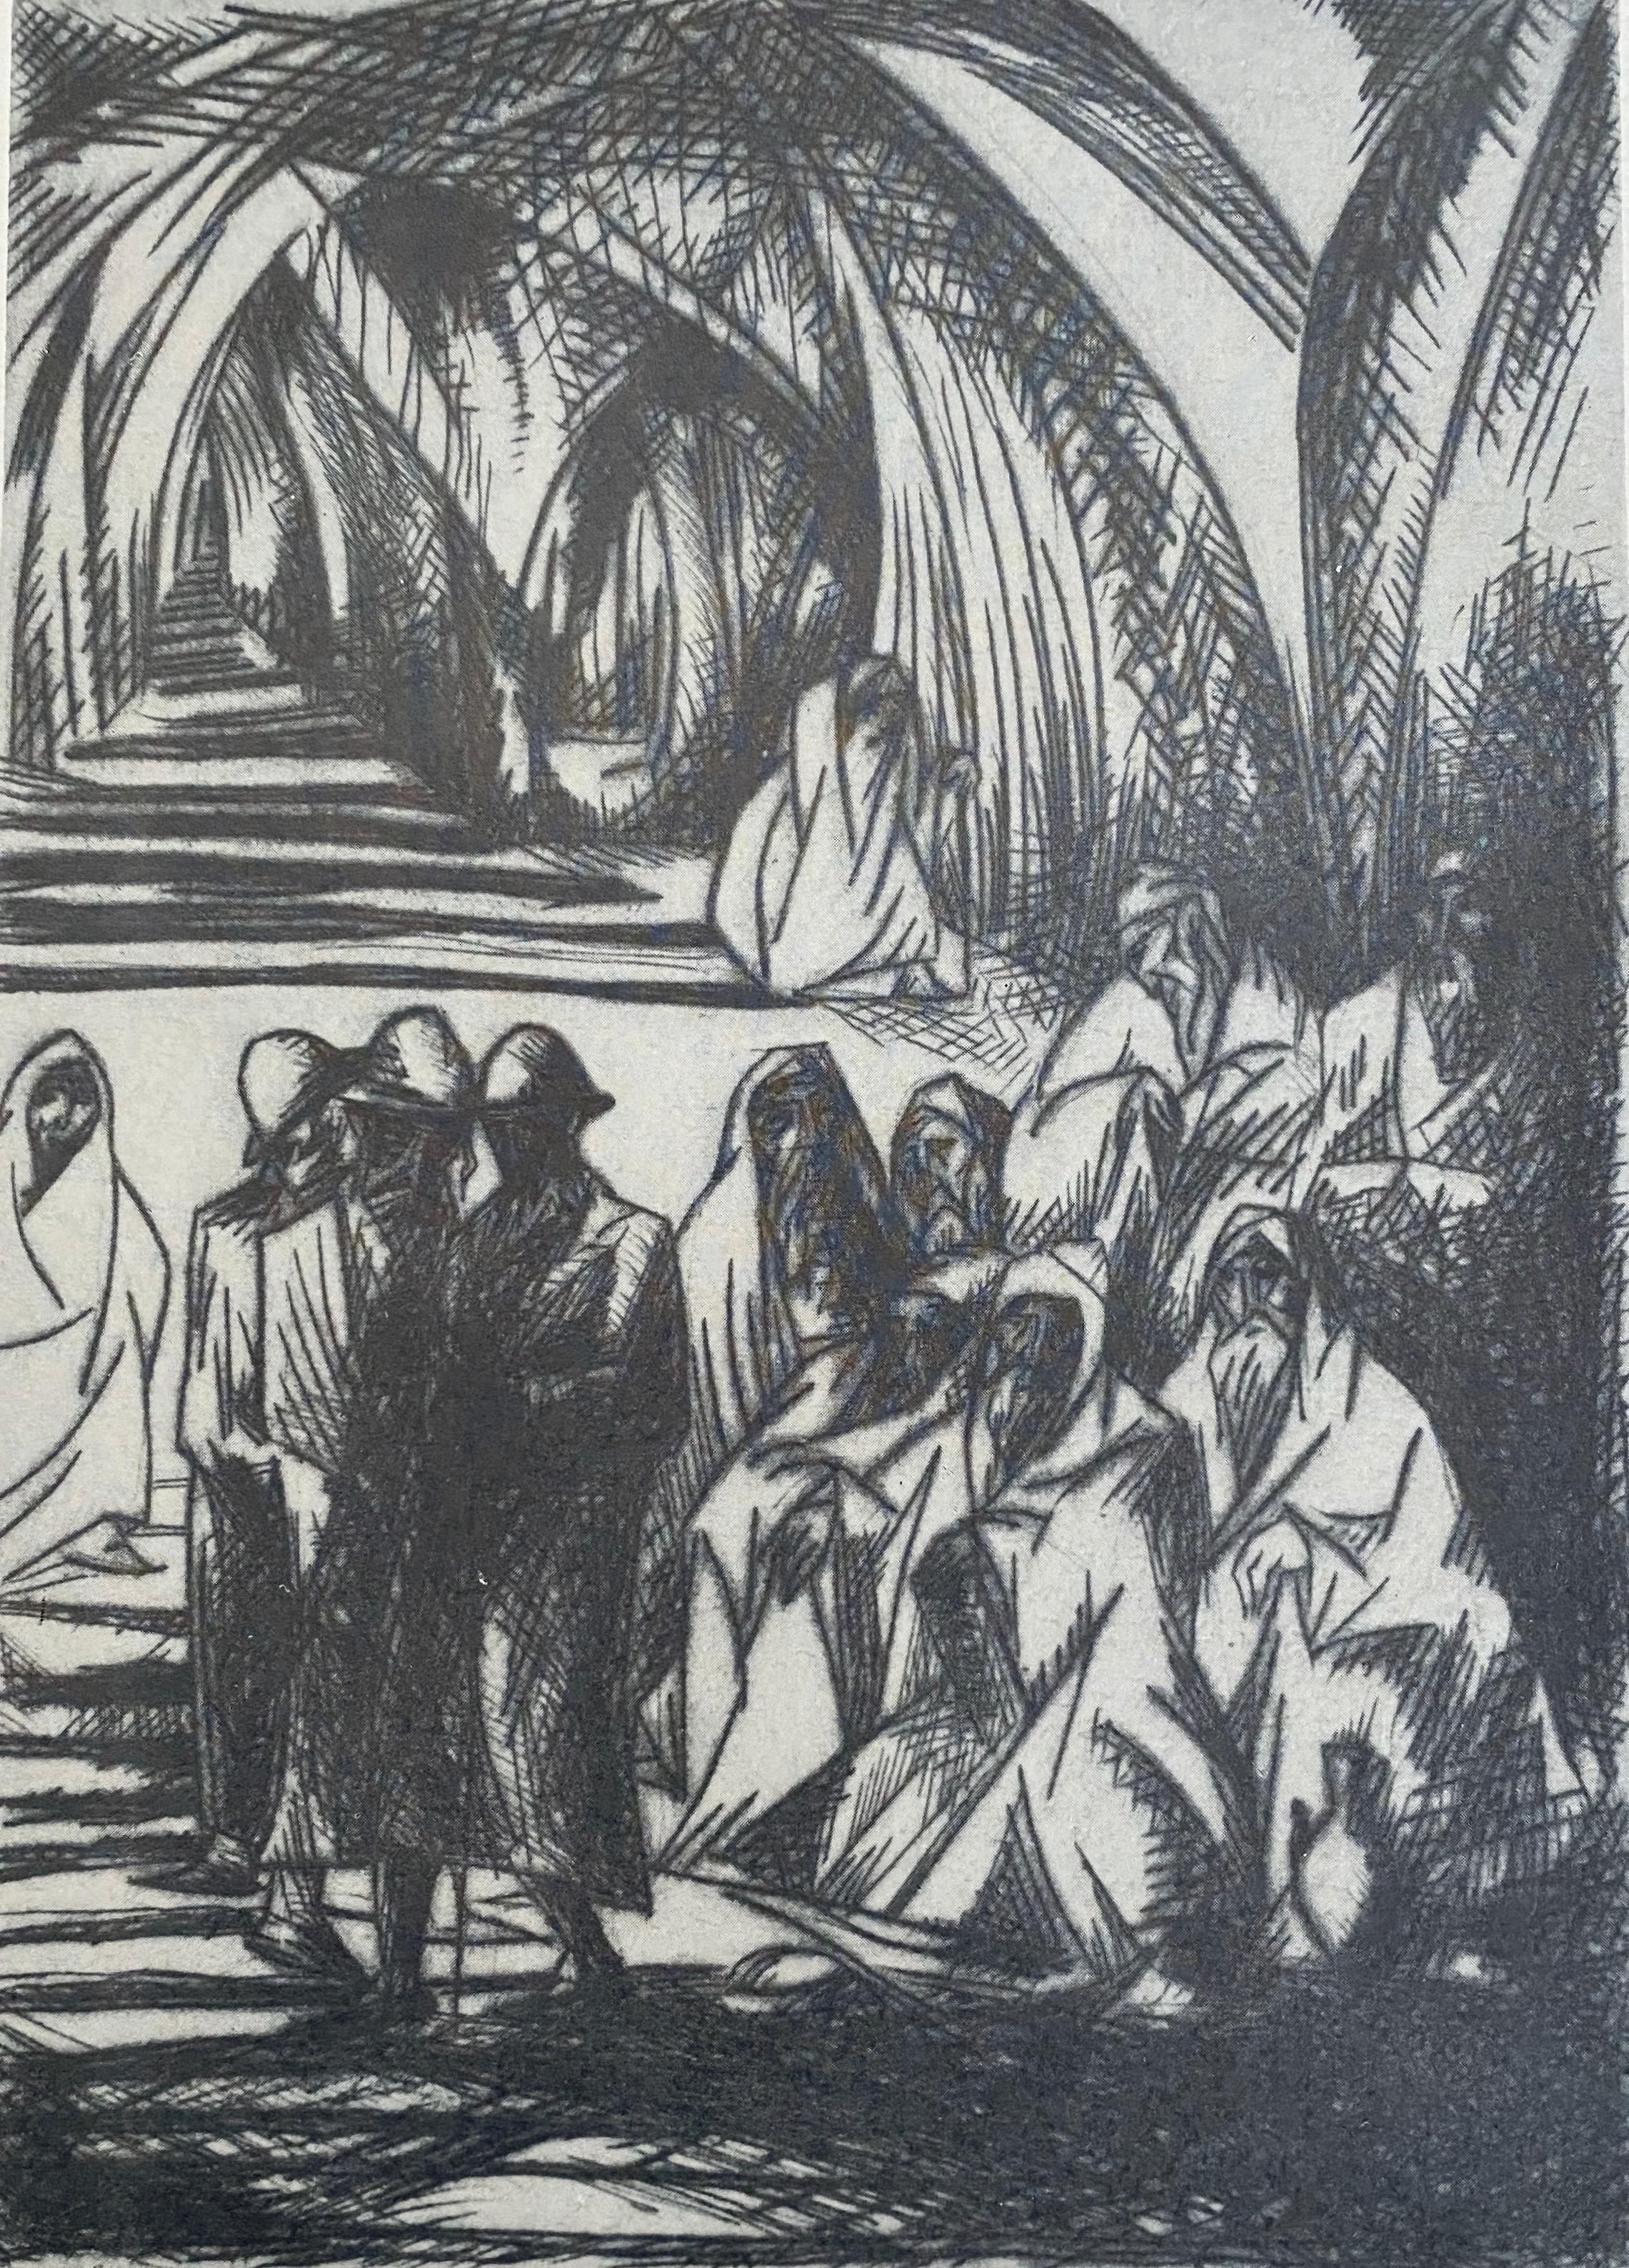  Bezalel-Schule Jerusalem Israelische Judaica-Radierung - Beggars  (Post-Impressionismus), Art, von Isaac Lichtenstein